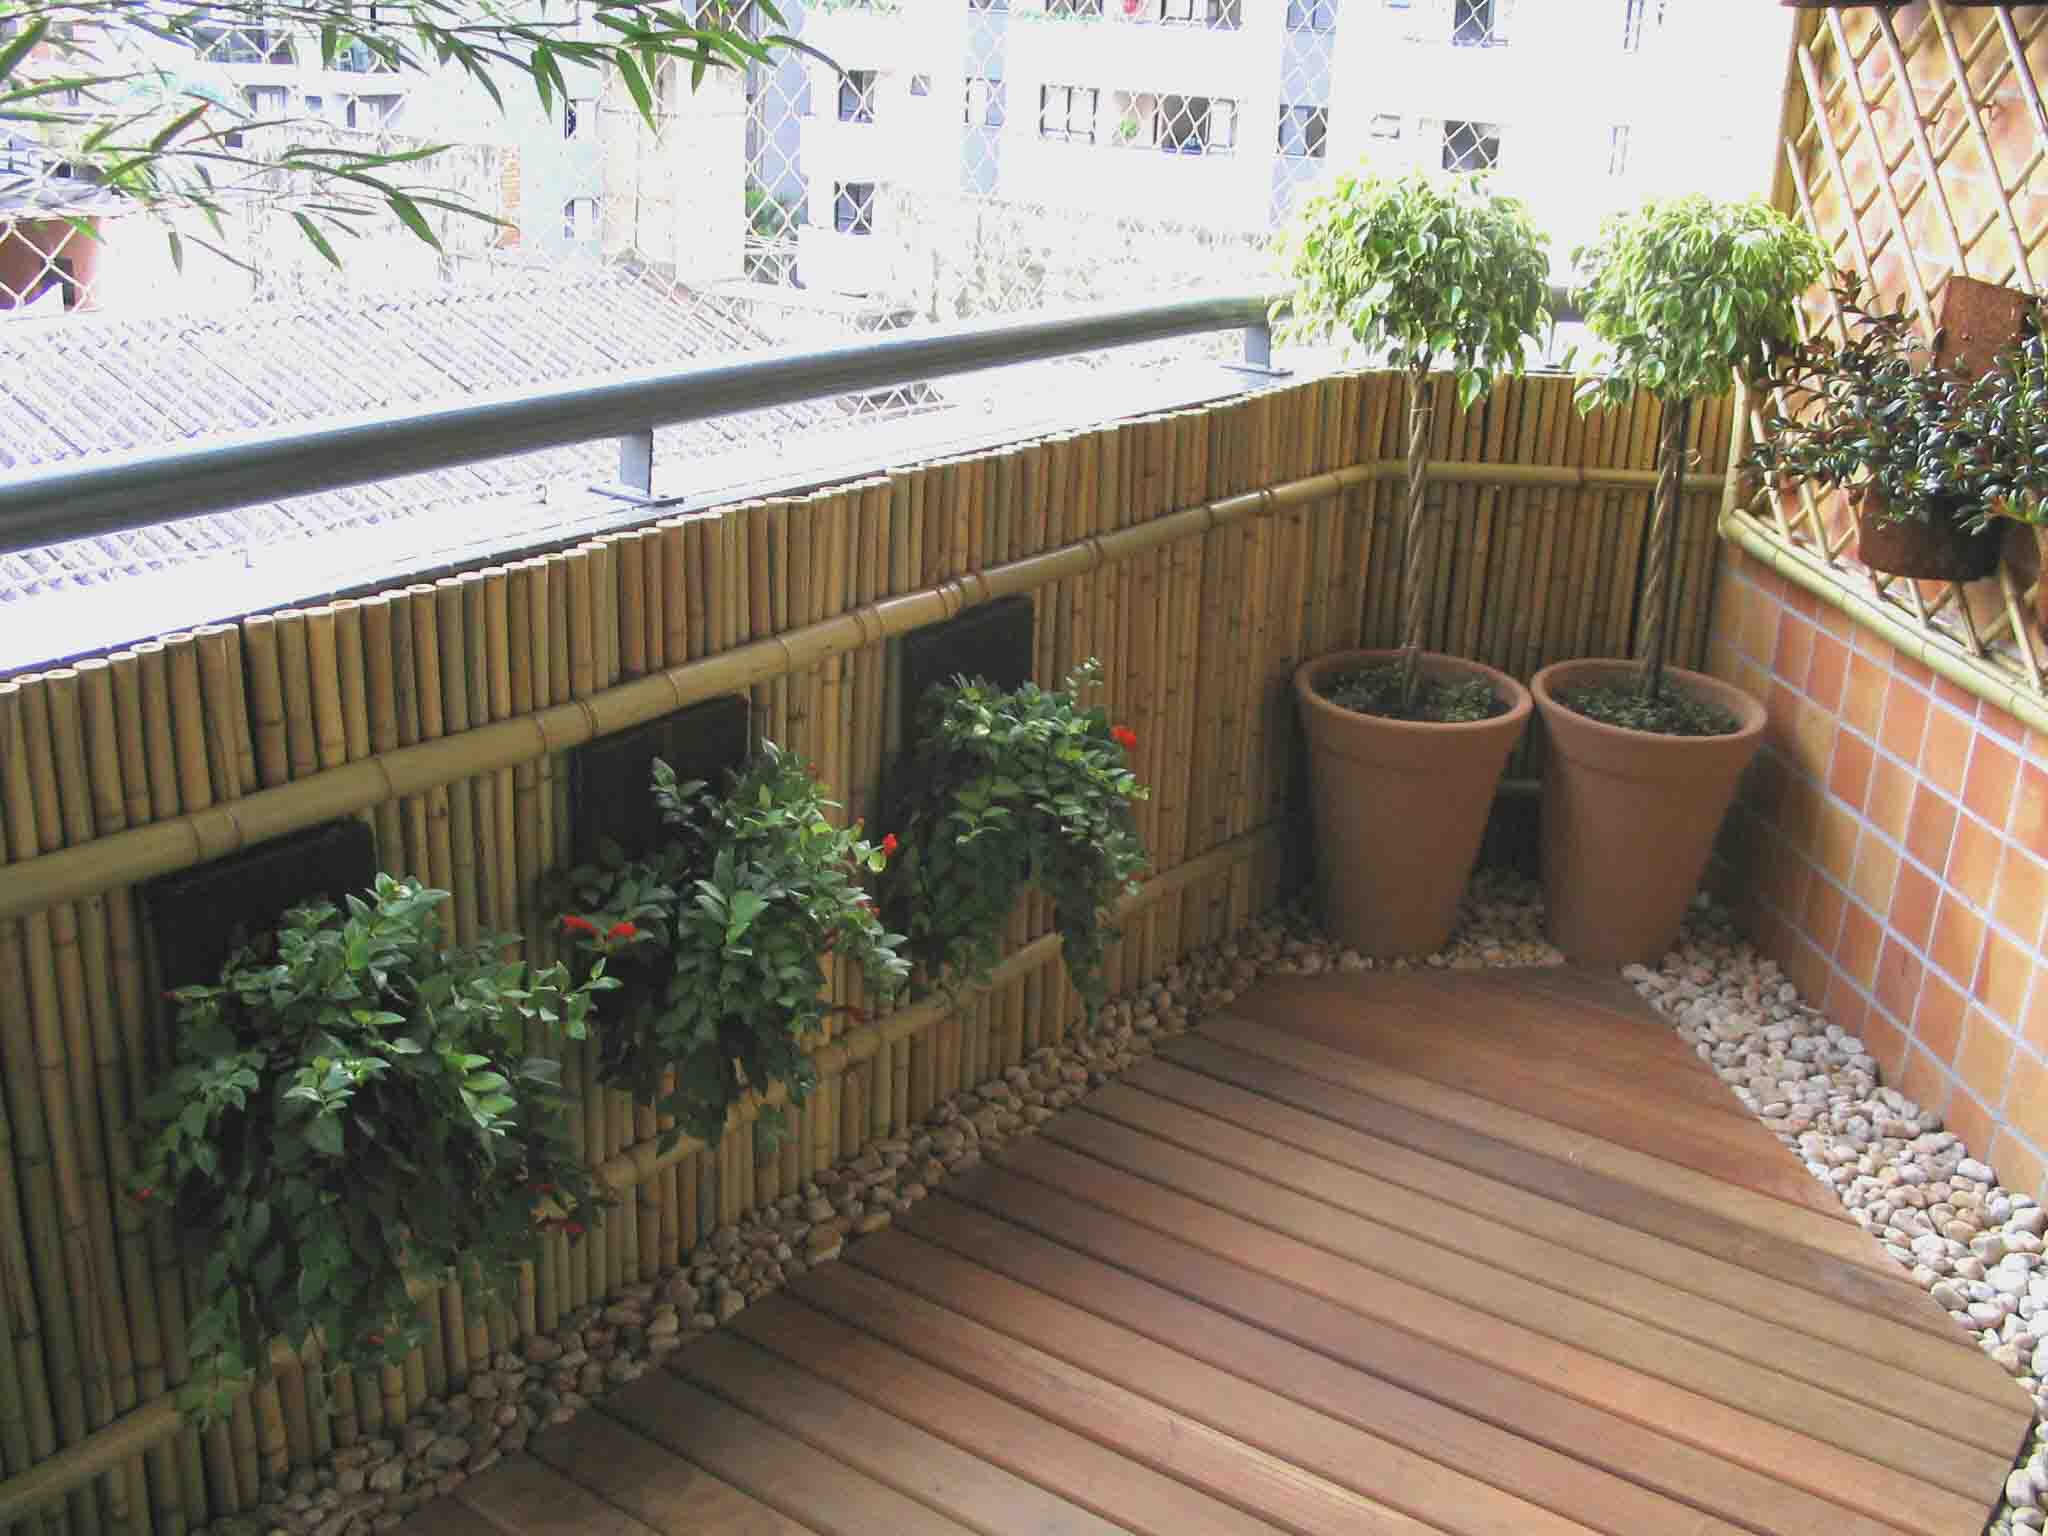 Балконный экран. Бамбуковая изгородь на балкон. Декор балкона. Бамбук на балконе. Изгородь из бамбука на балконе.